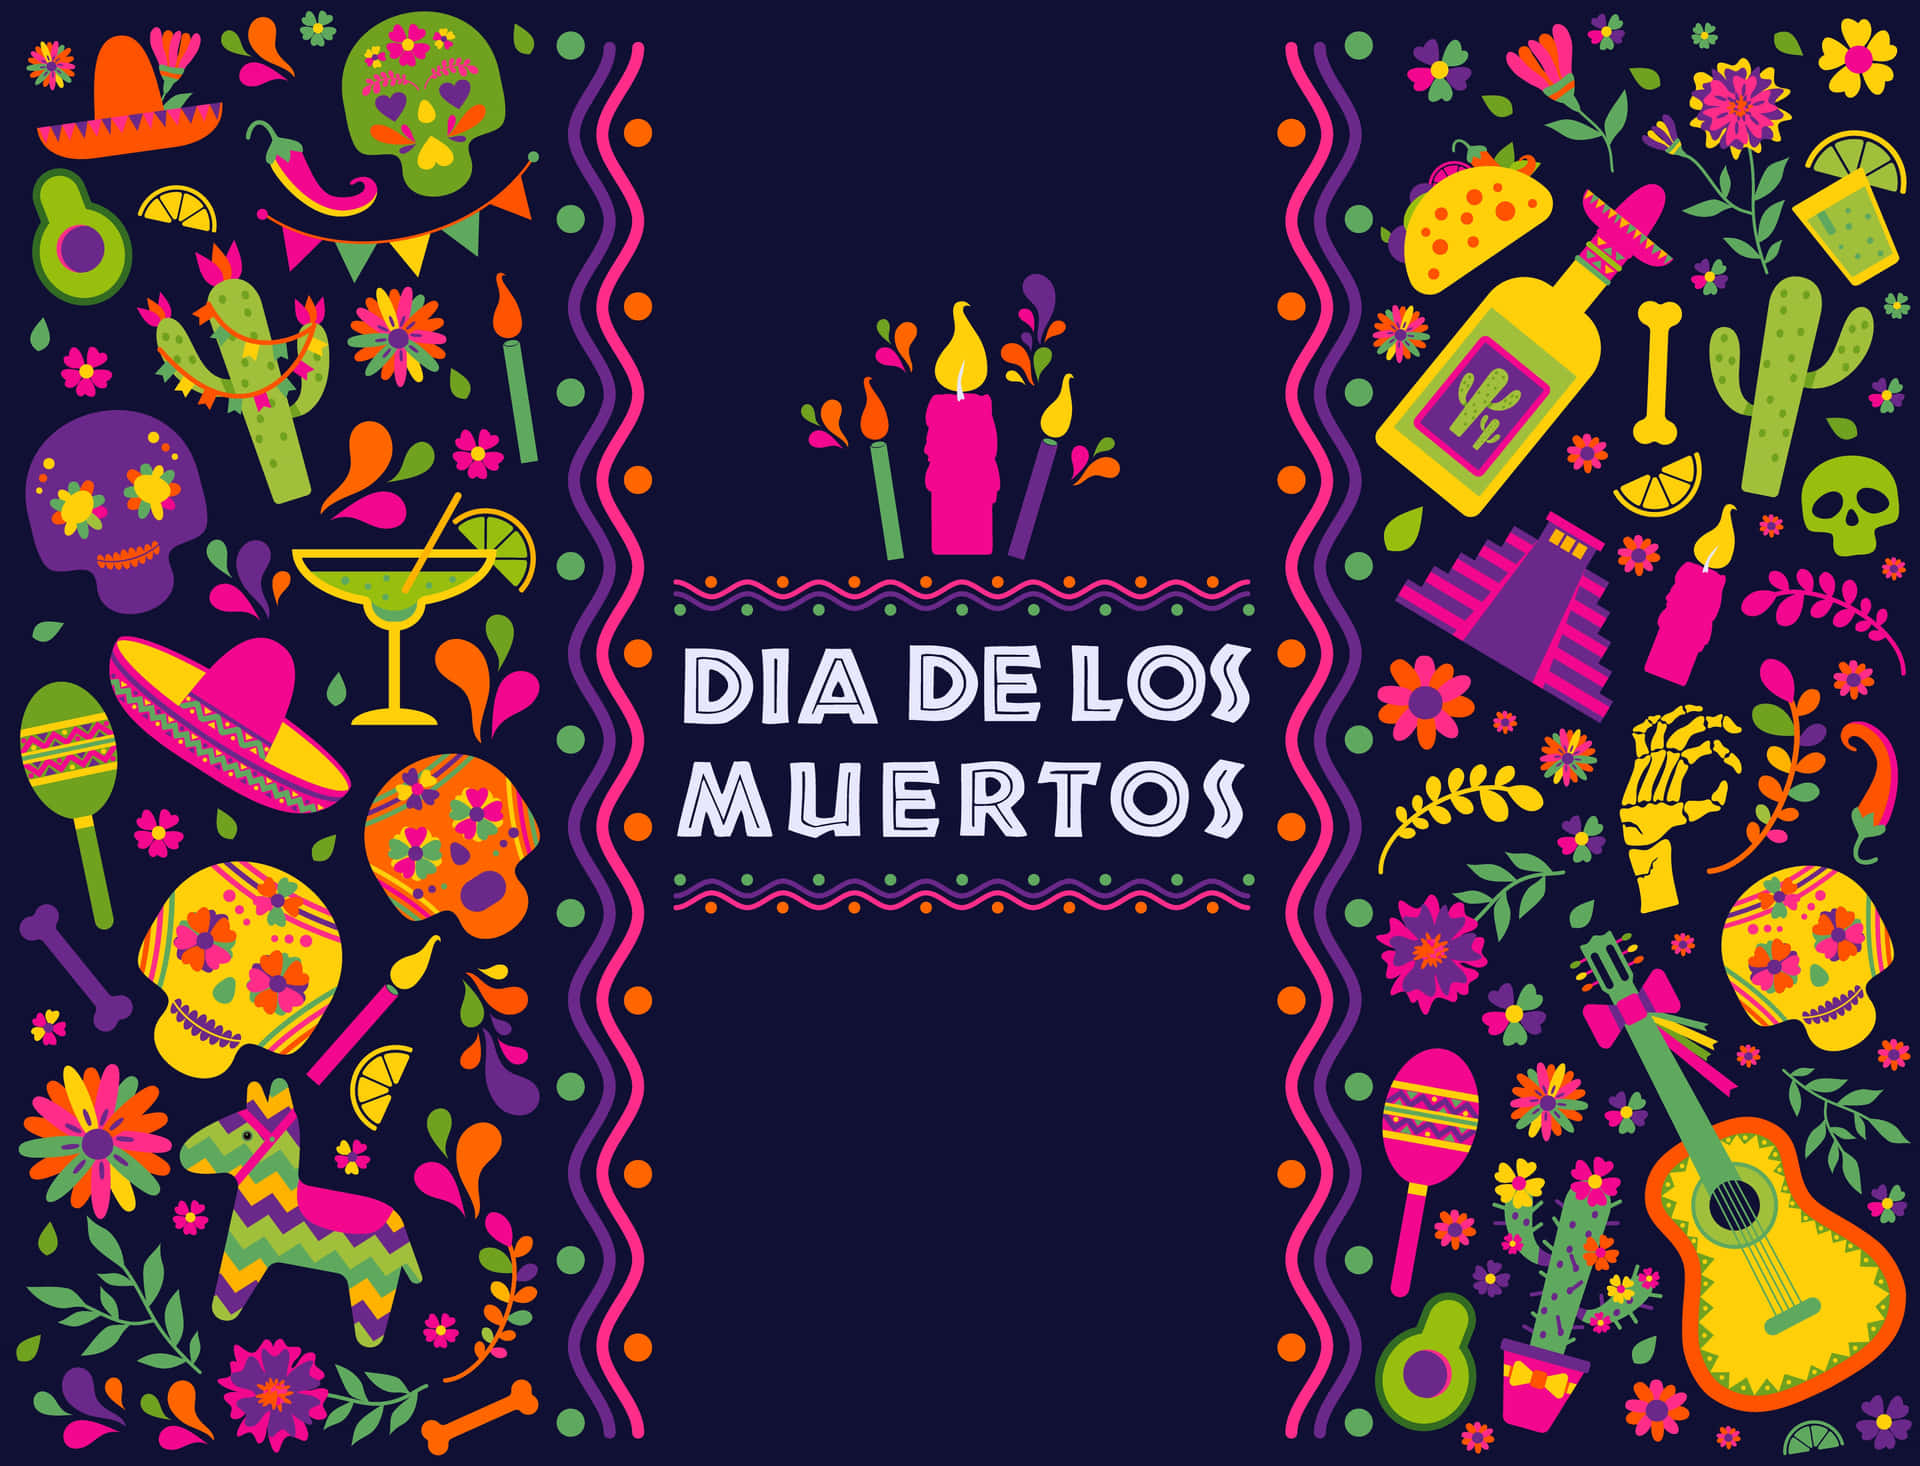 Färgglattmexikanskt Högtidsmotiv Med Orden Dia De Los Muertos